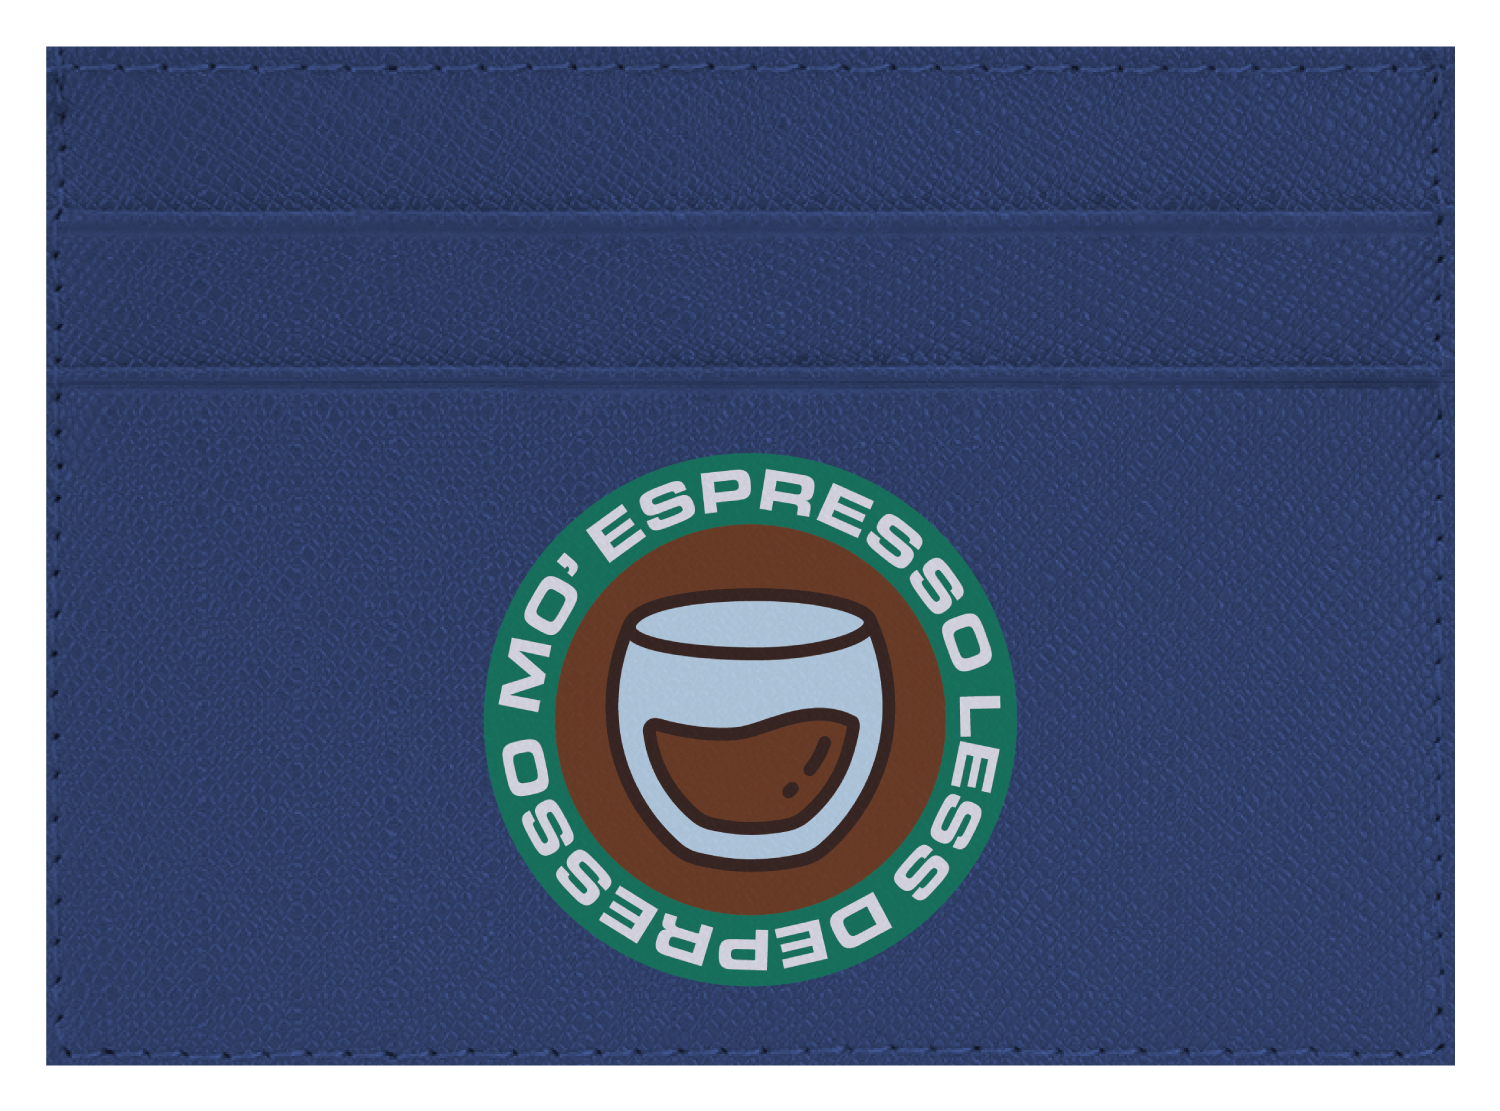 Mo Expresso Less Depresso